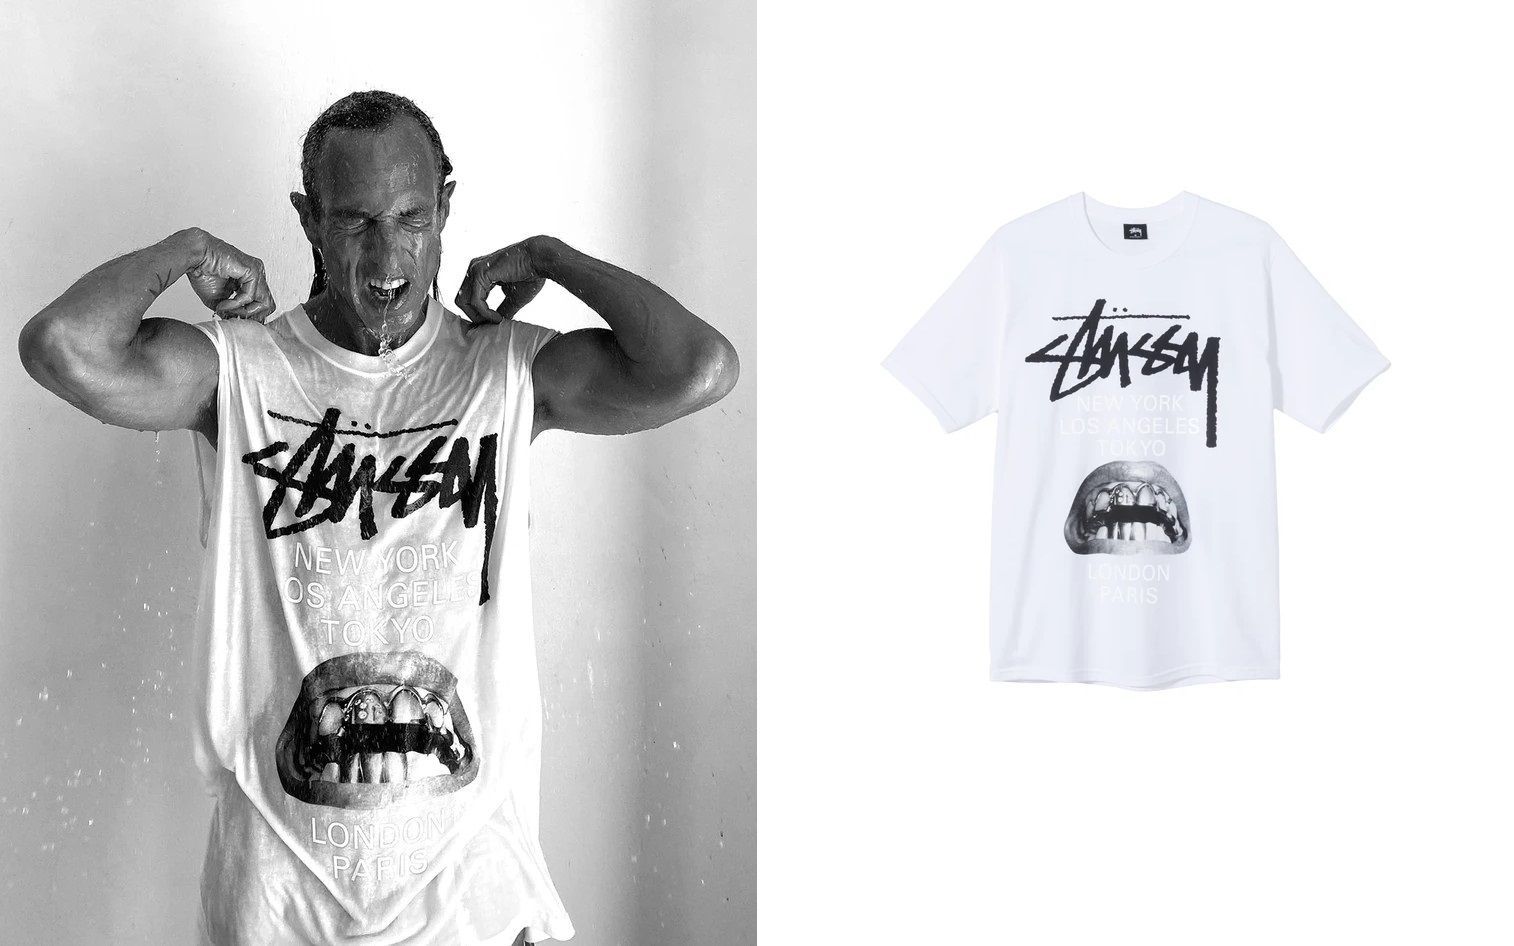 STUSSY×RICK OWENS 「World Tour Collection T-shirt」ワールドツアーコレクションTシャツ ホワイト  サイズ:XL